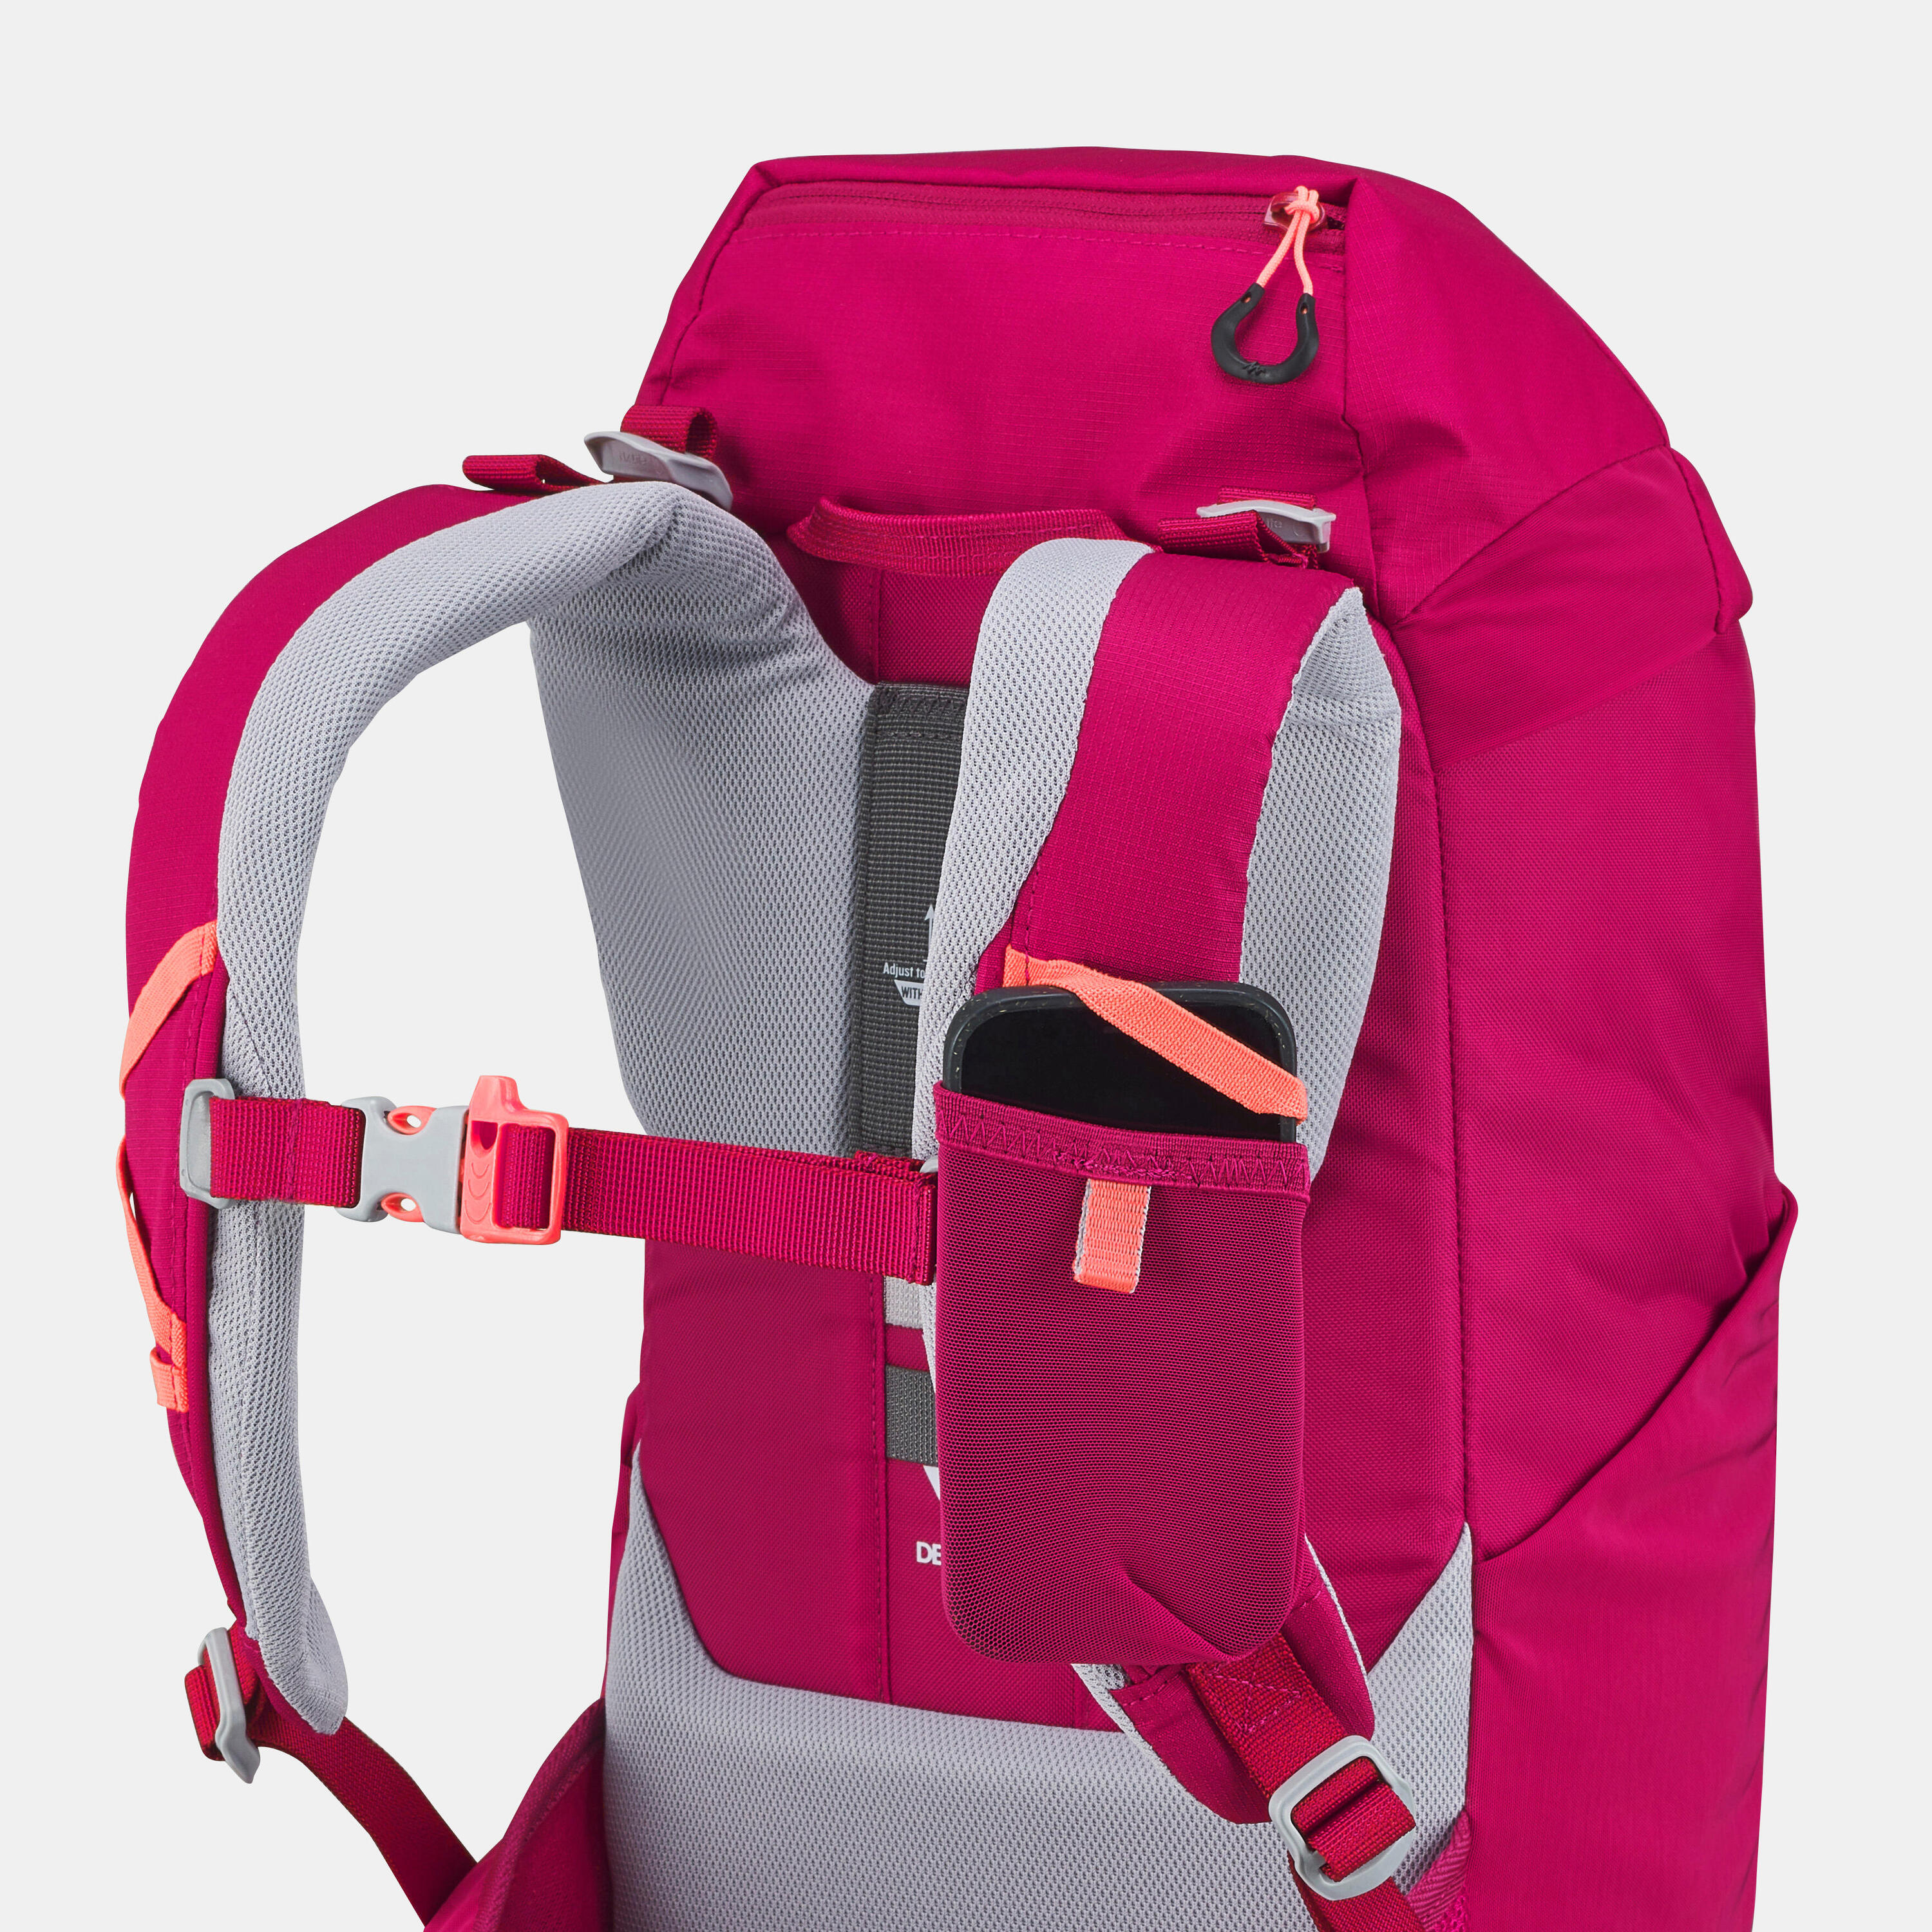 Kids' hiking backpack 18L - MH500 8/11